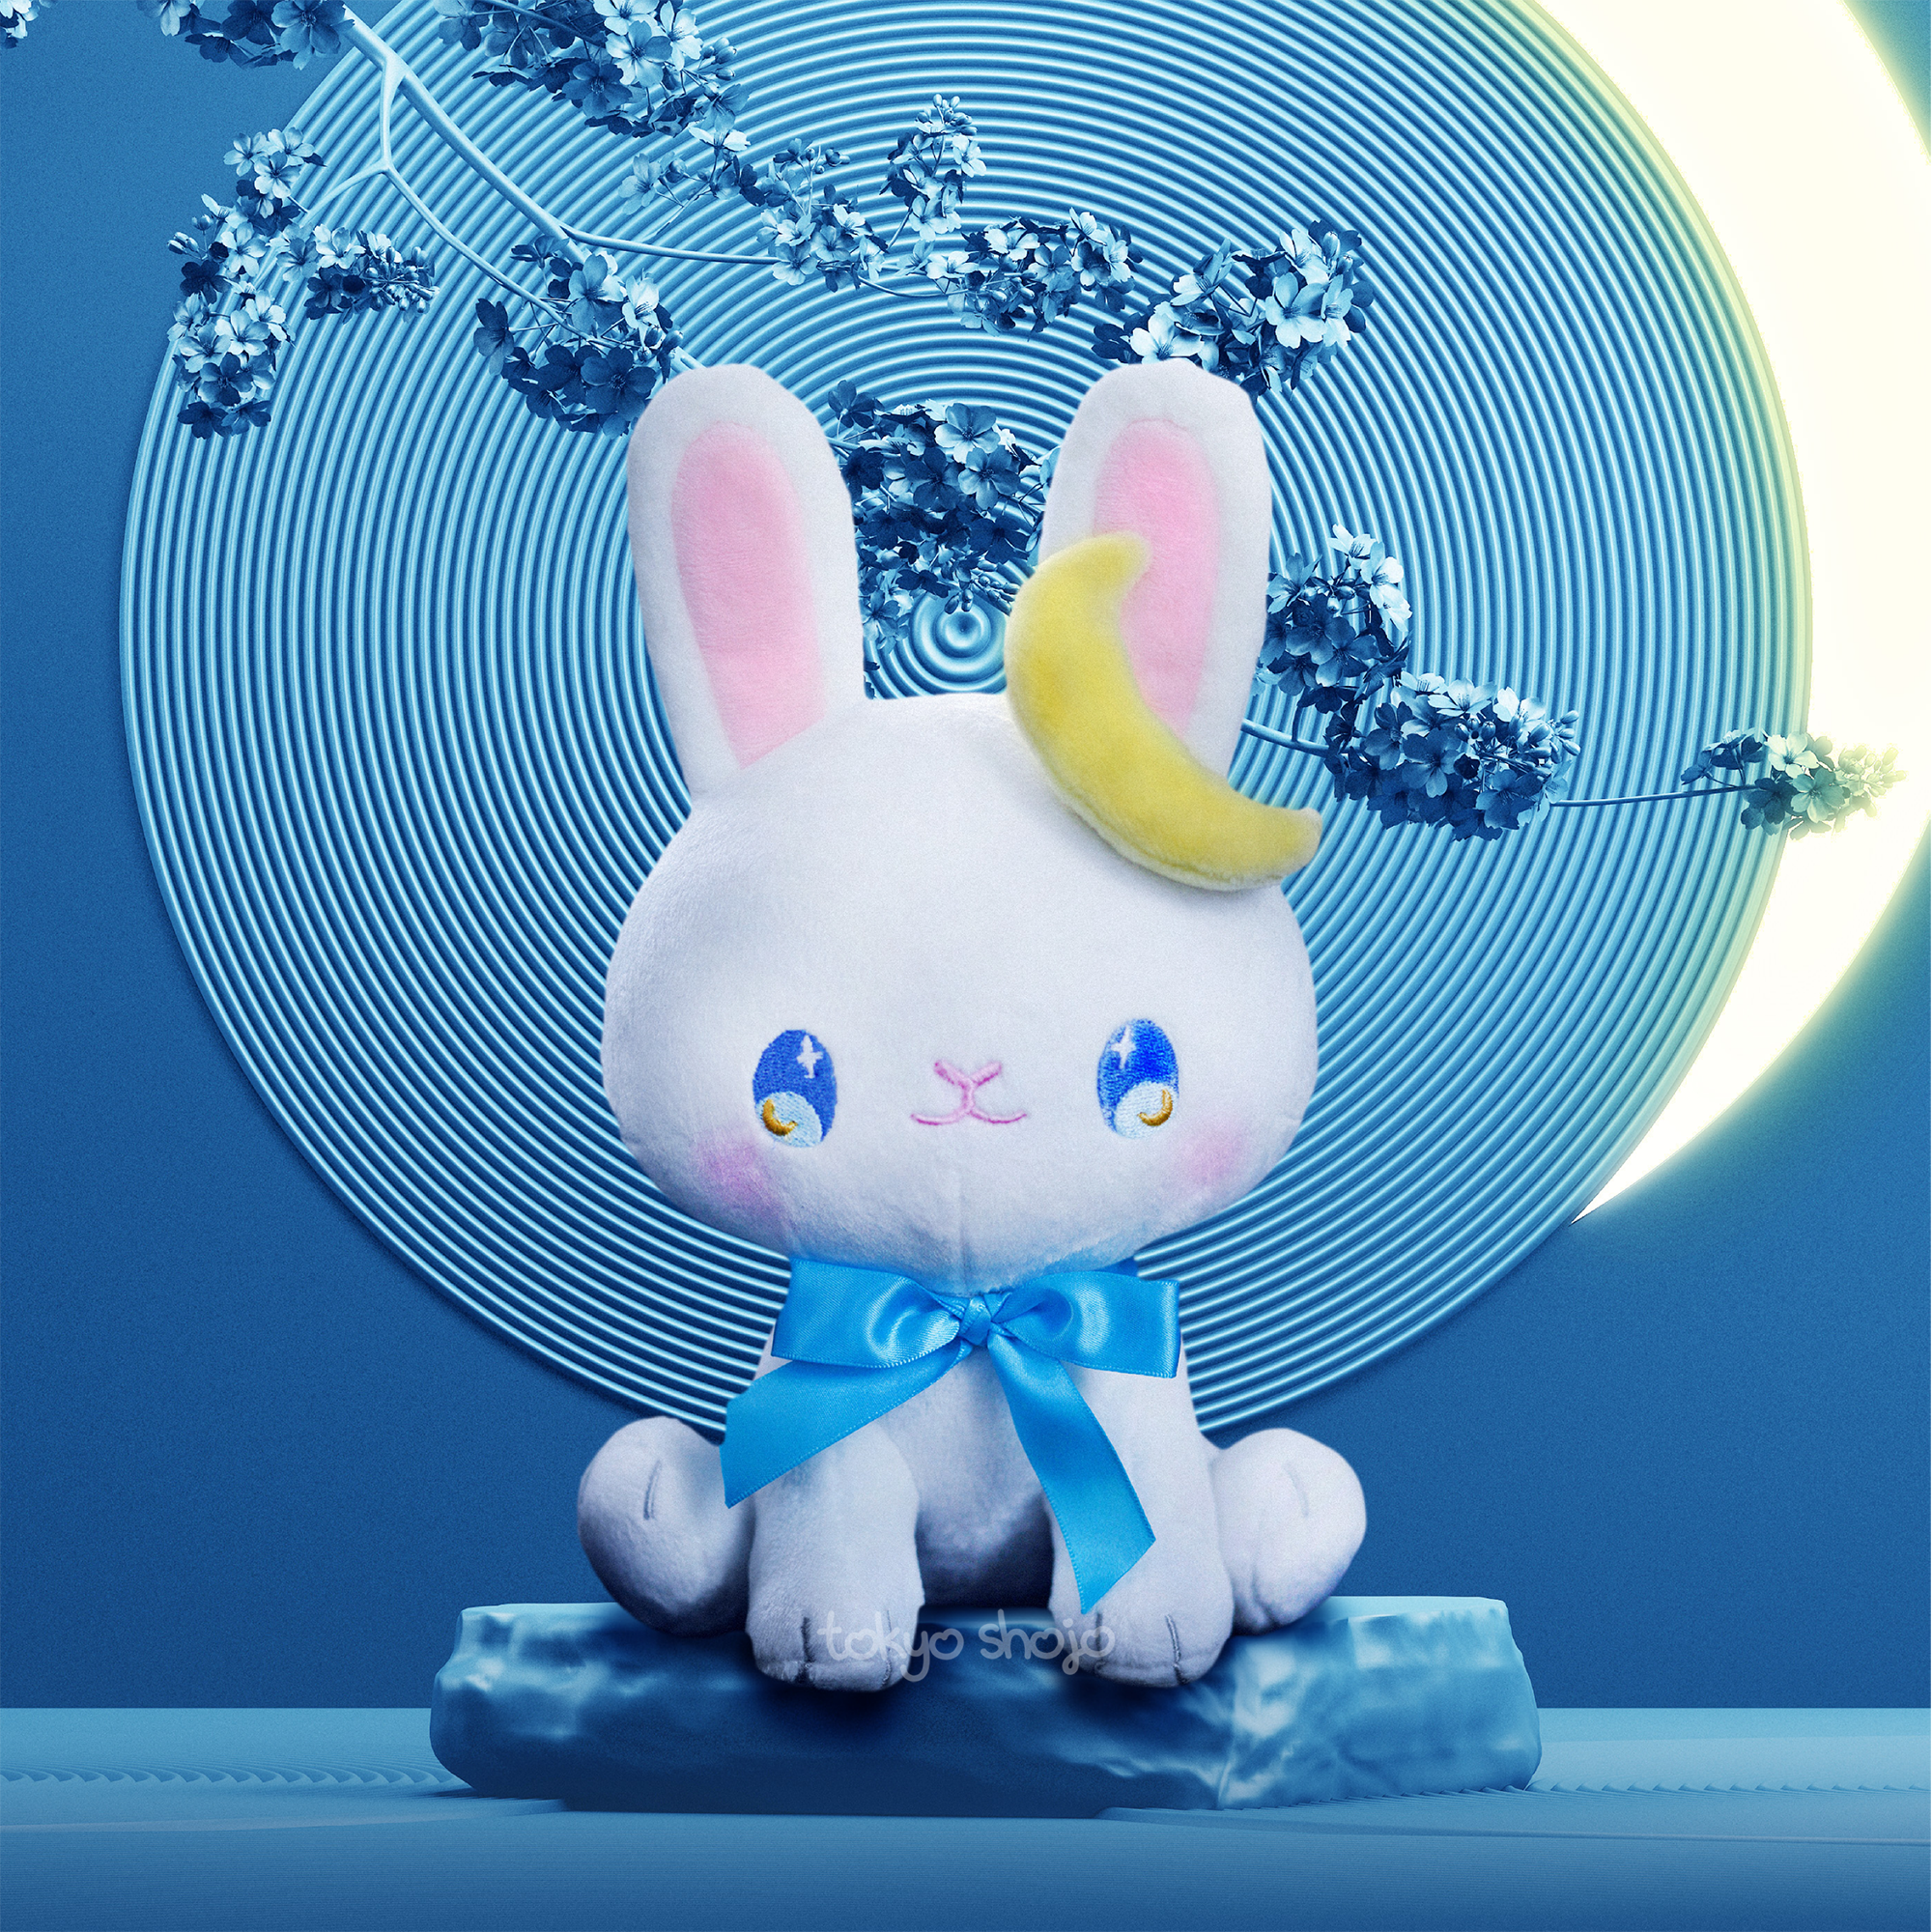 [Tokyo Shojo] Tsuki the Bunny Plushie